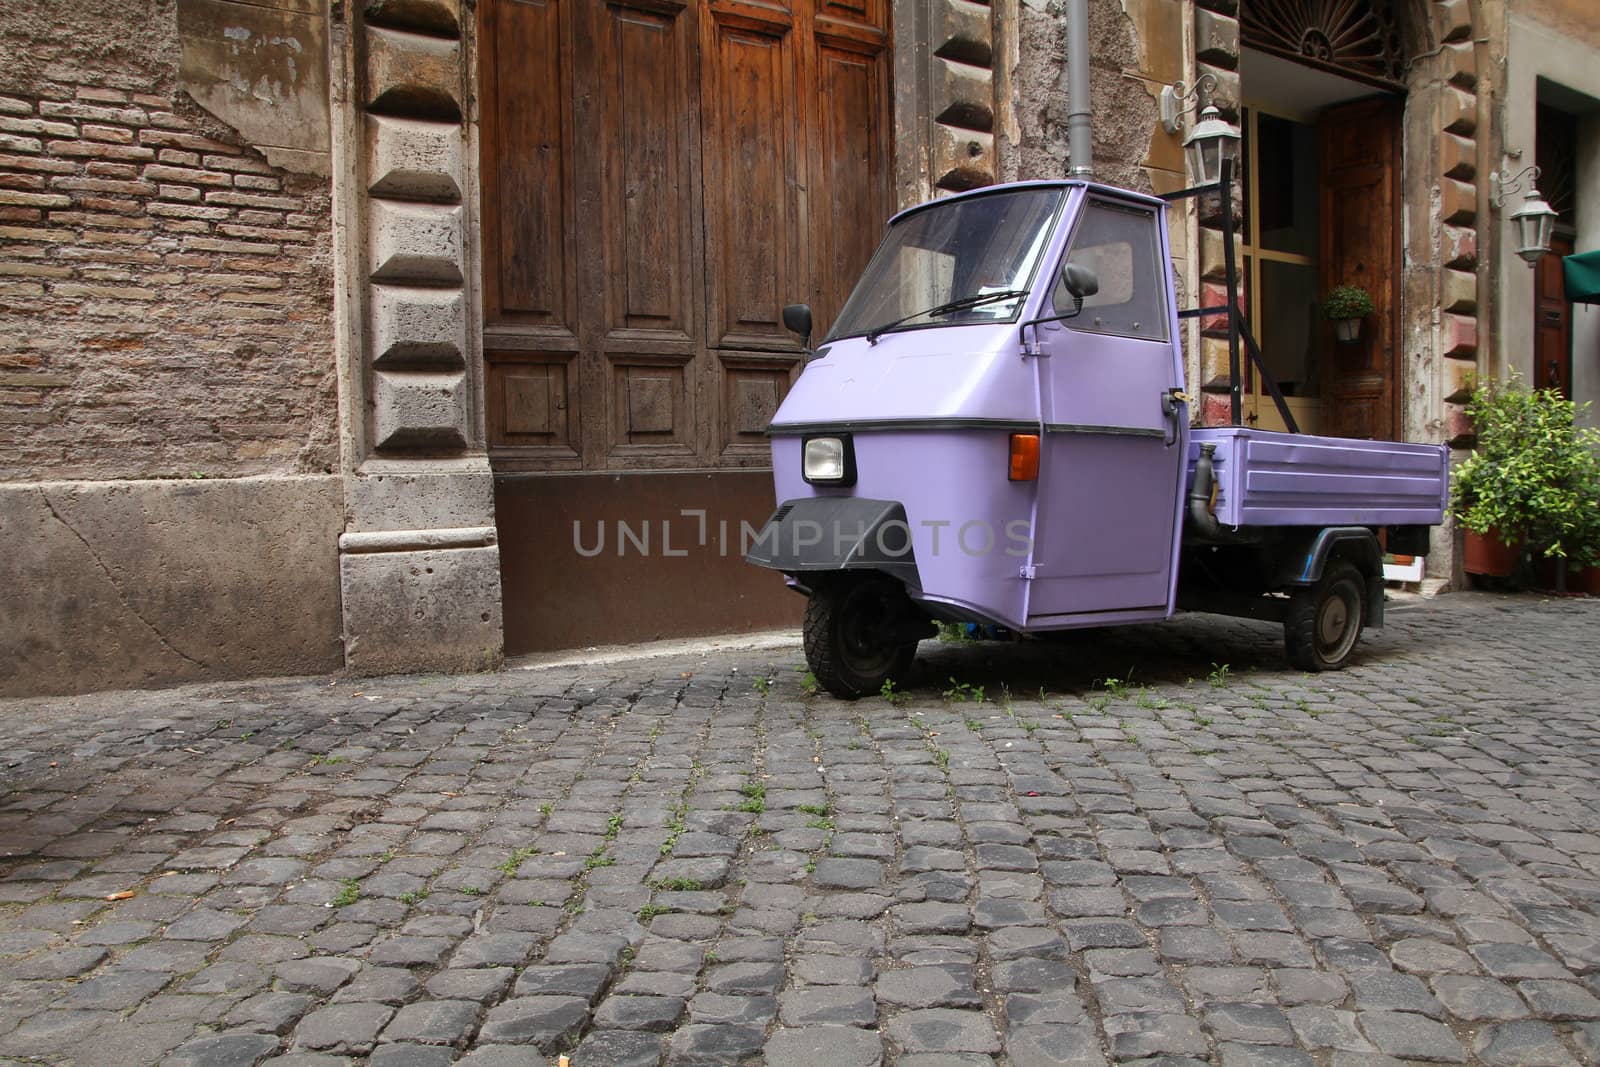 Rome, Italy. Cobblestone street and a funny three wheeled car.